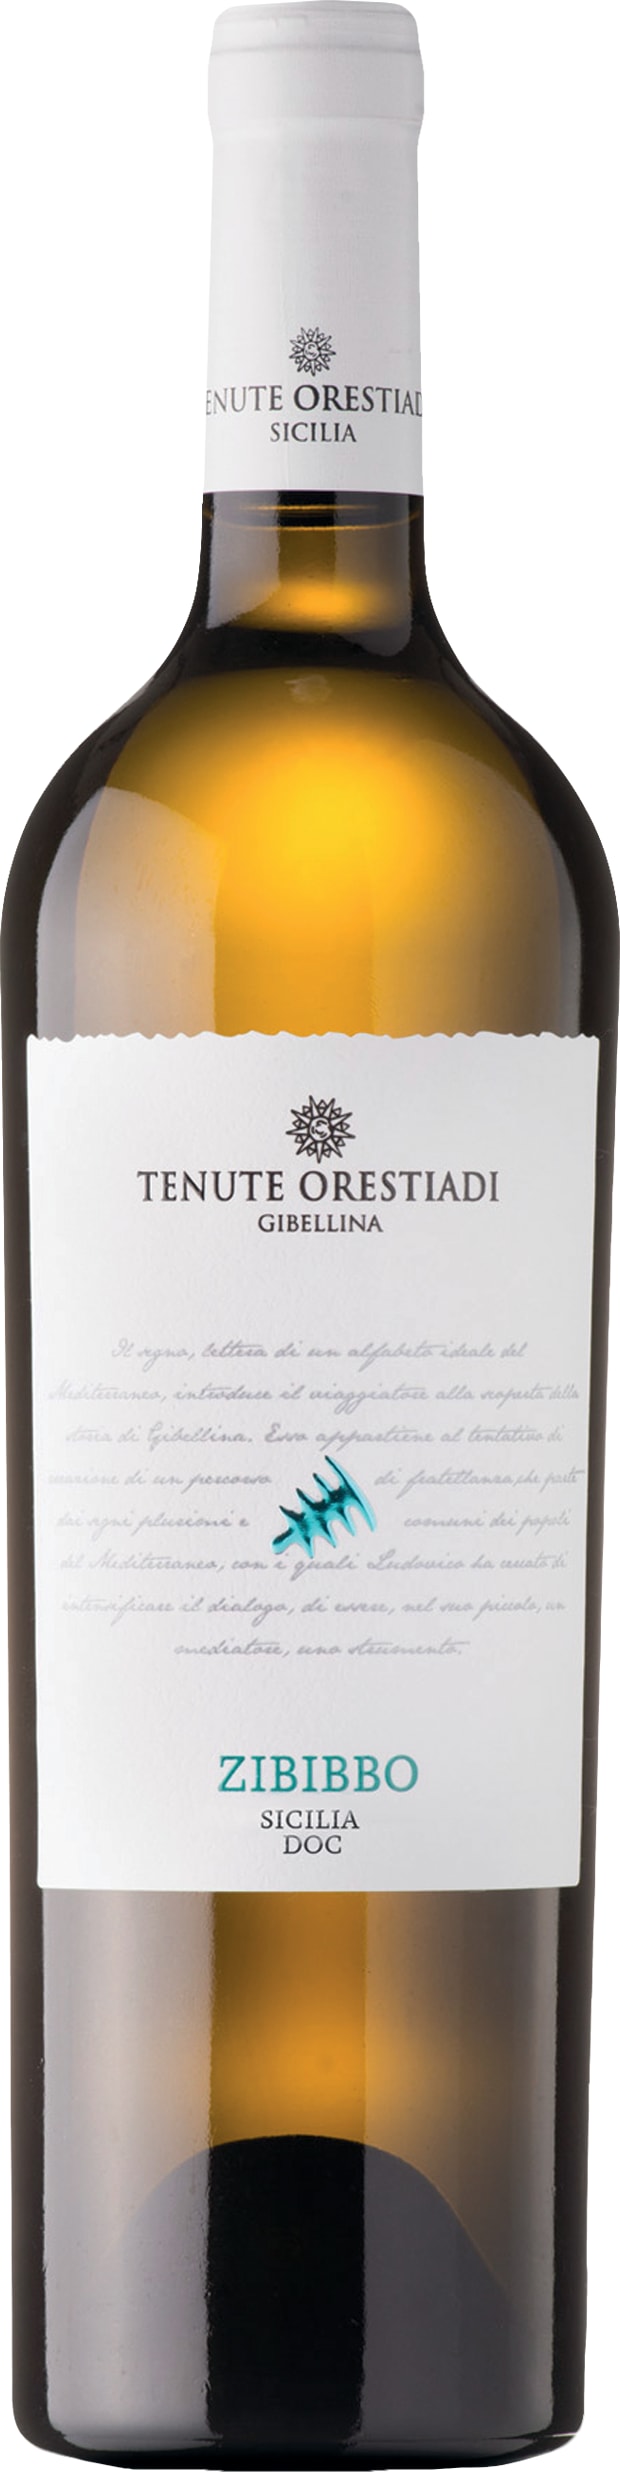 Tenute Orestiadi - Tenute Orestiadi Zibibbo 2022 75cl - Buy Tenute Orestiadi - Tenute Orestiadi Wines from GREAT WINES DIRECT wine shop